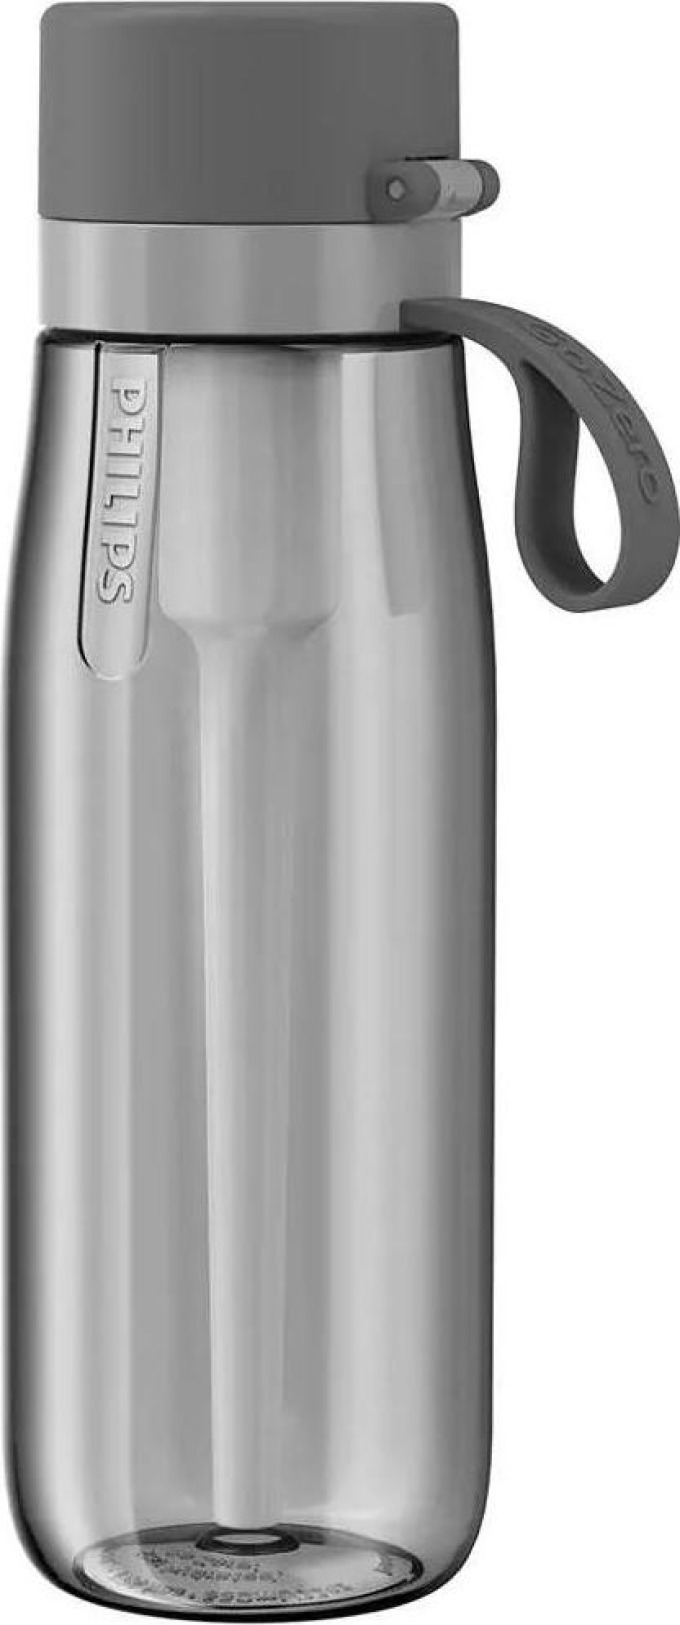 Filtrační láhev Philips Daily AWP2731GRR/58 (šedá), 0,6 l - Filtrační láhev s uzávěrem proti prachu a nedocházením úniku tekutiny, vhodná i do myčky nádobí